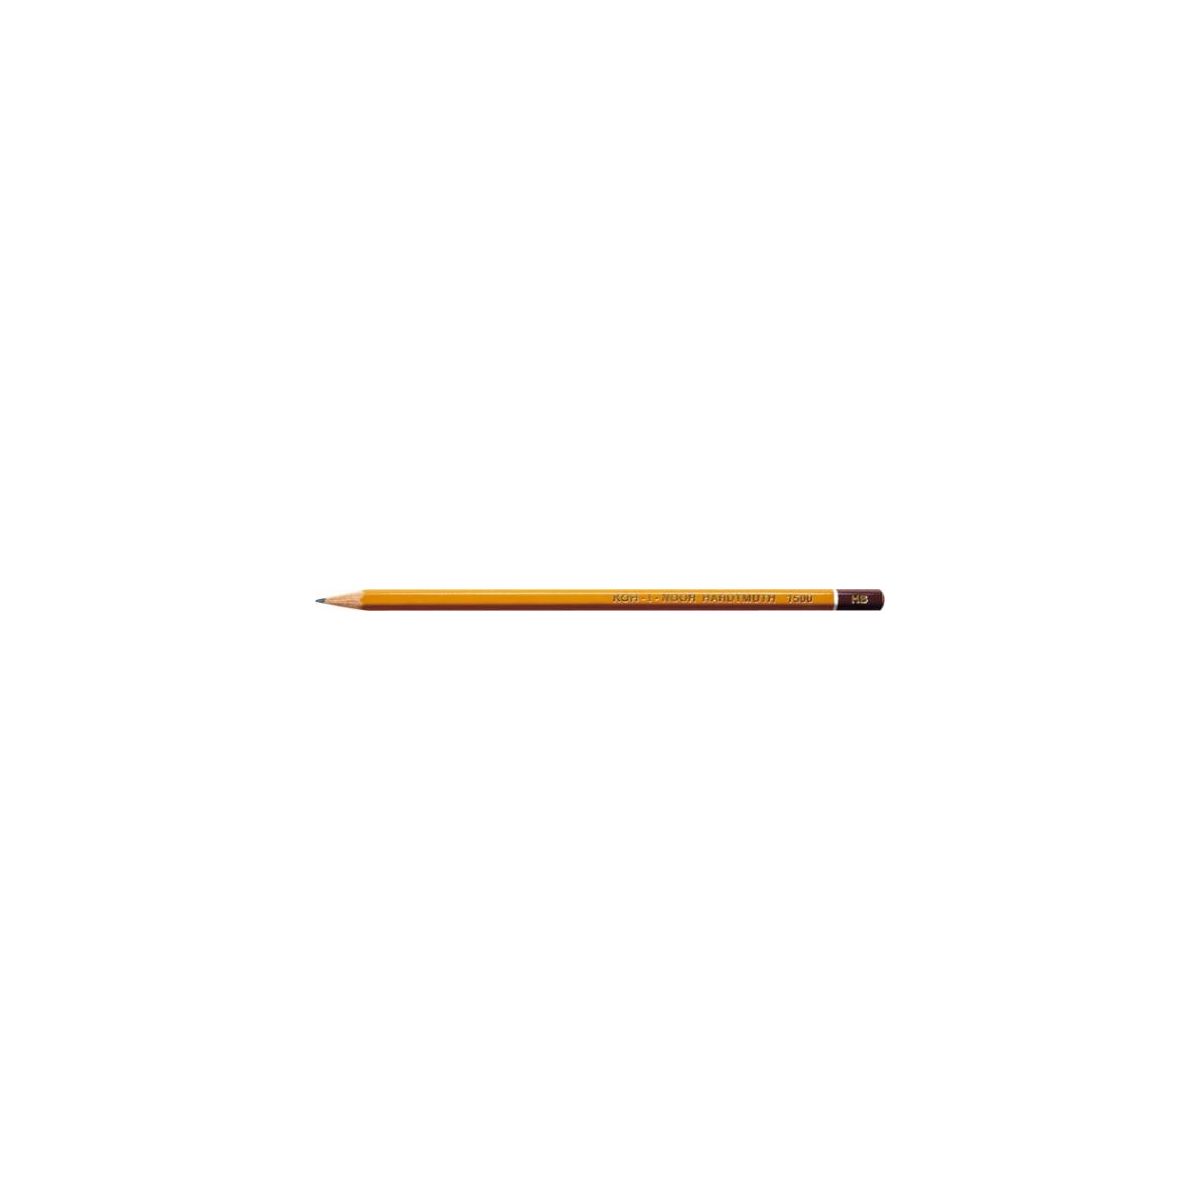 Ołówek Koh-I-Noor 1500 3H